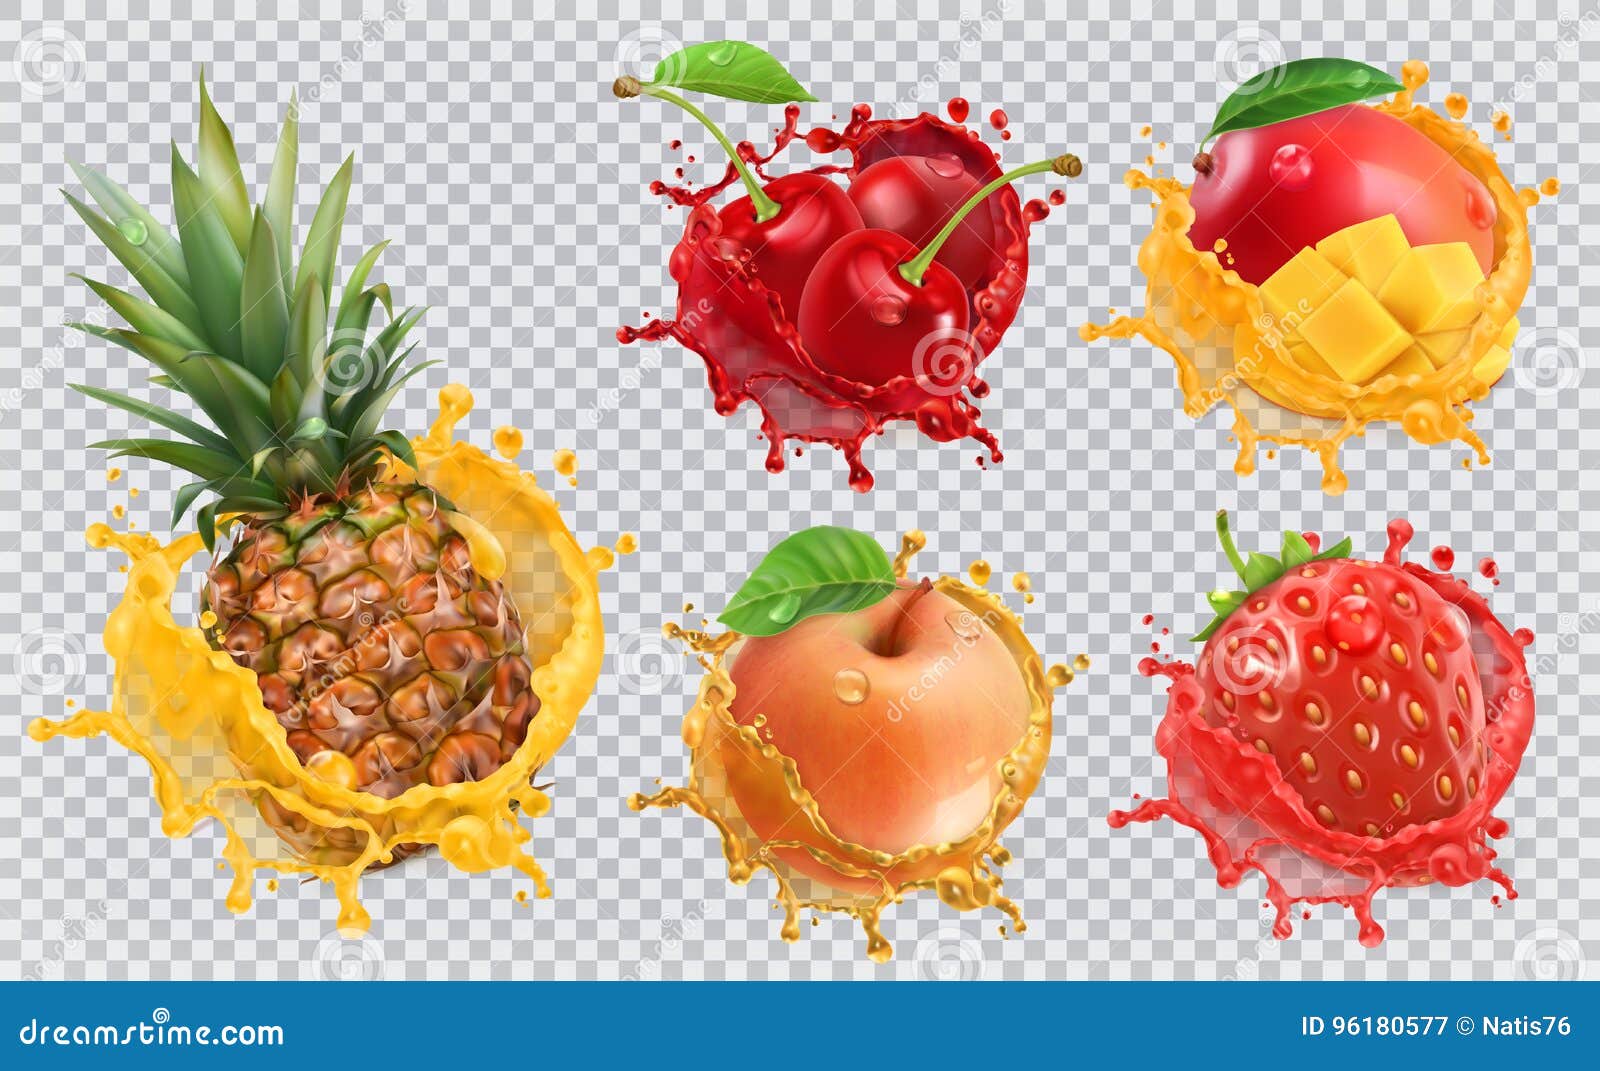 fresh fruits and splashes, 3d  icon set